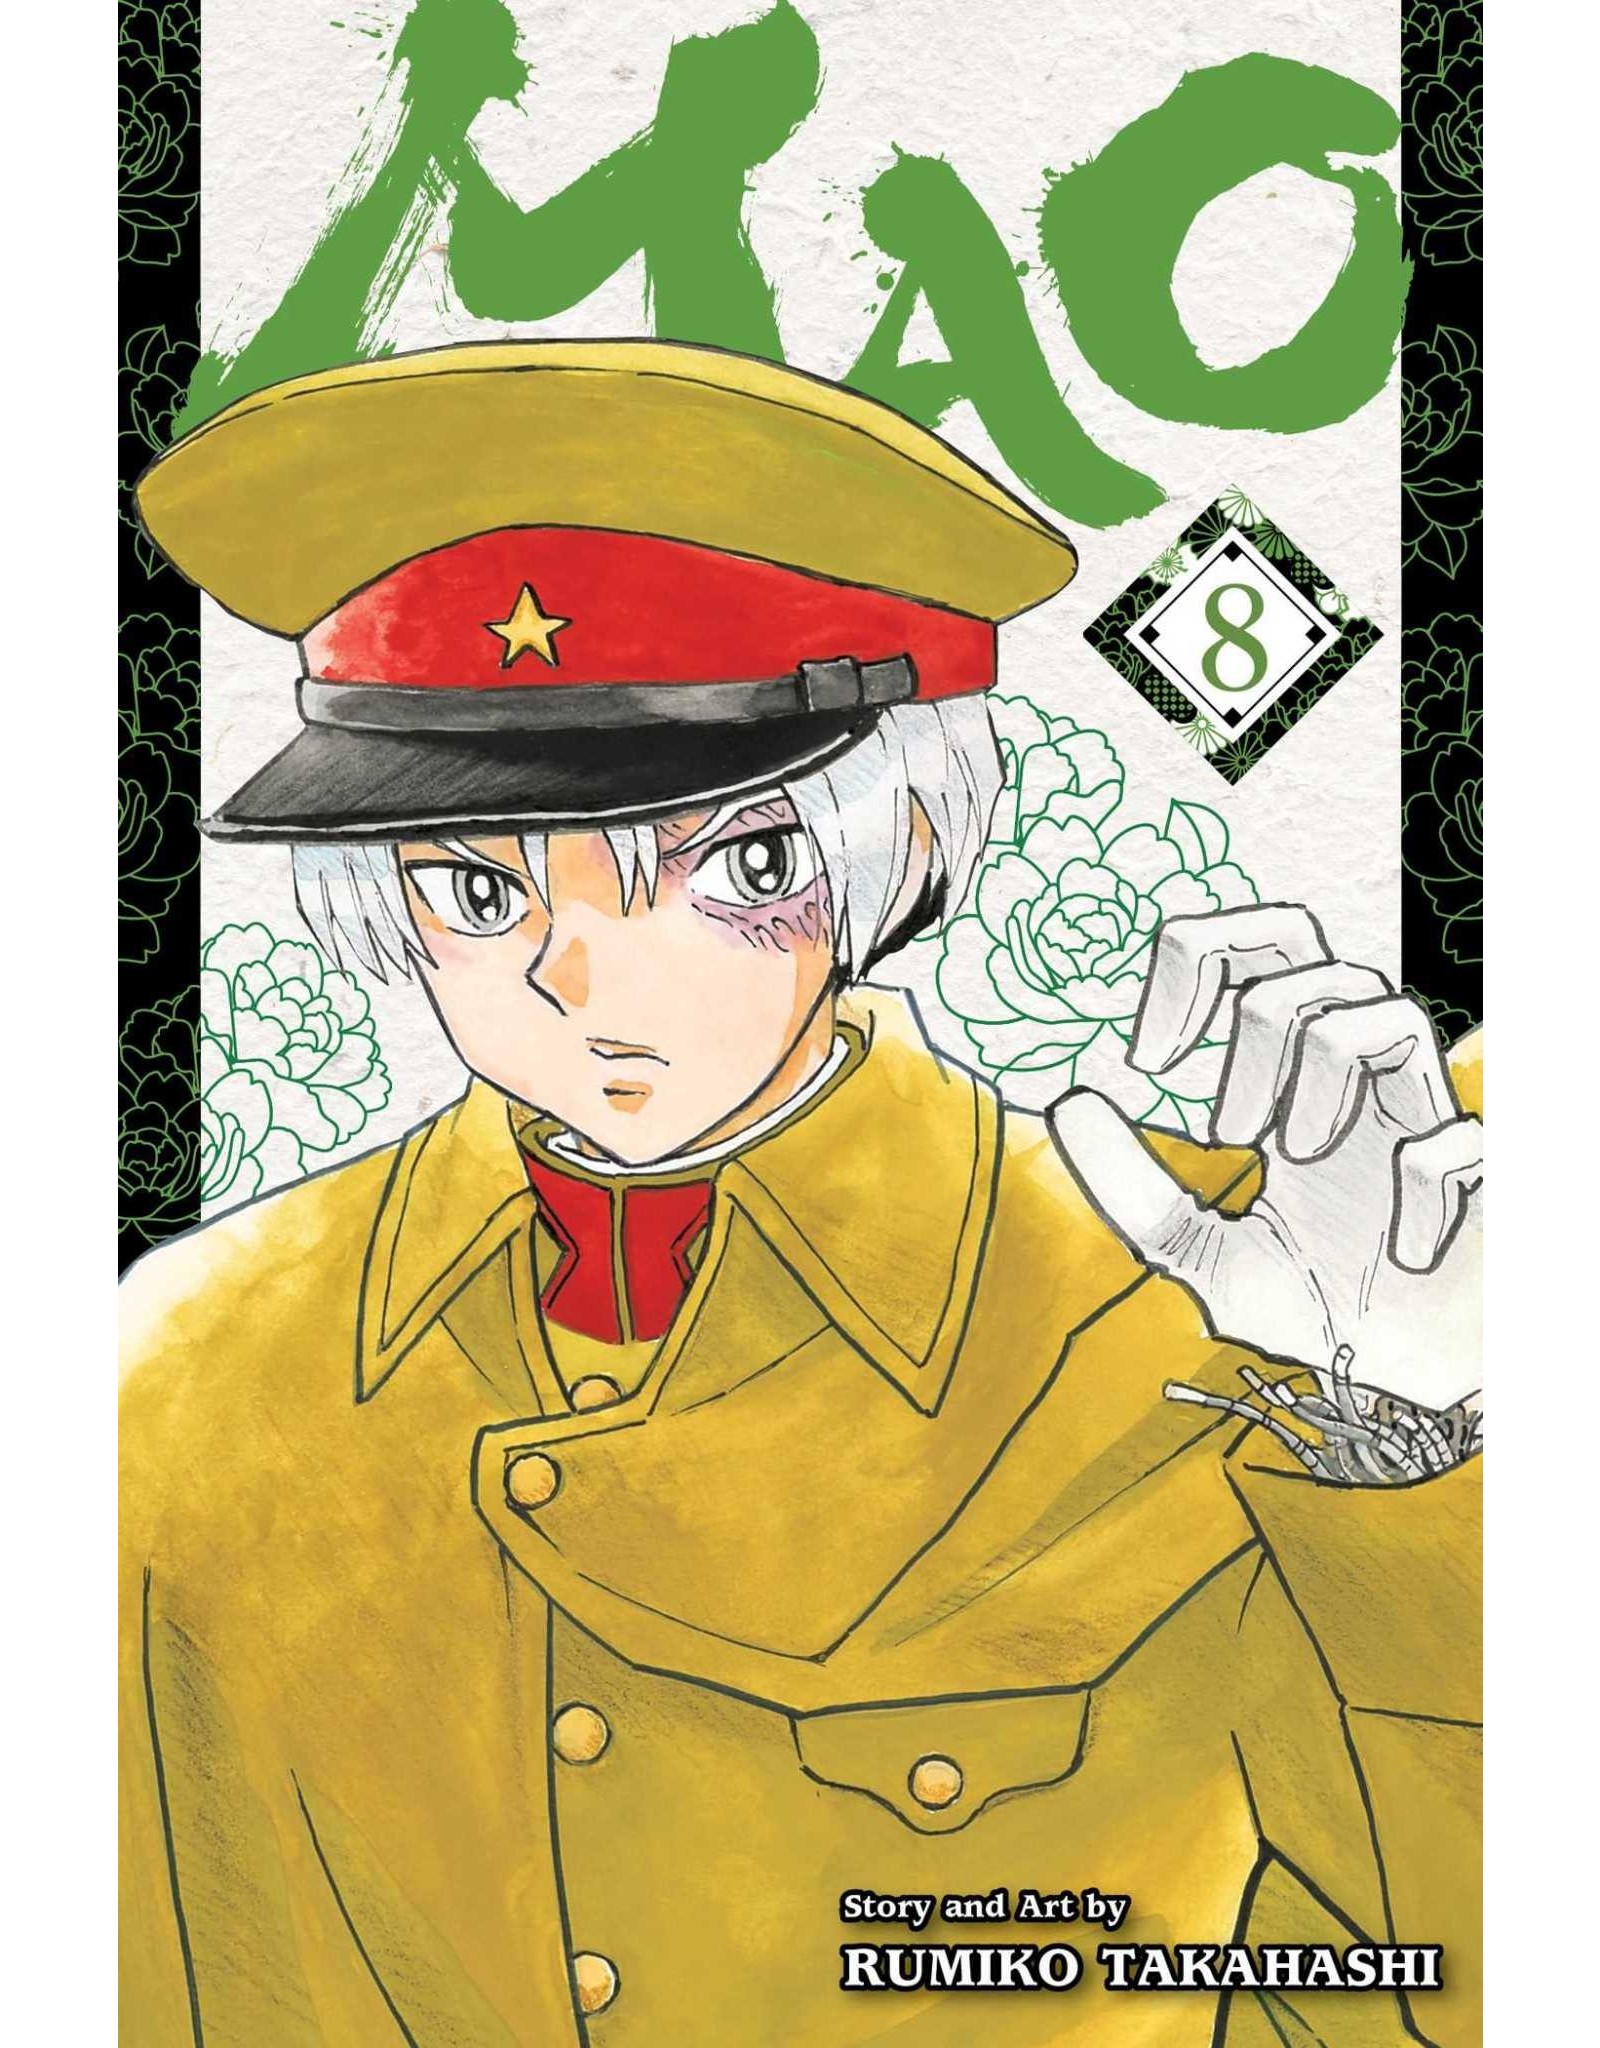 Mao 08 (English) - Manga